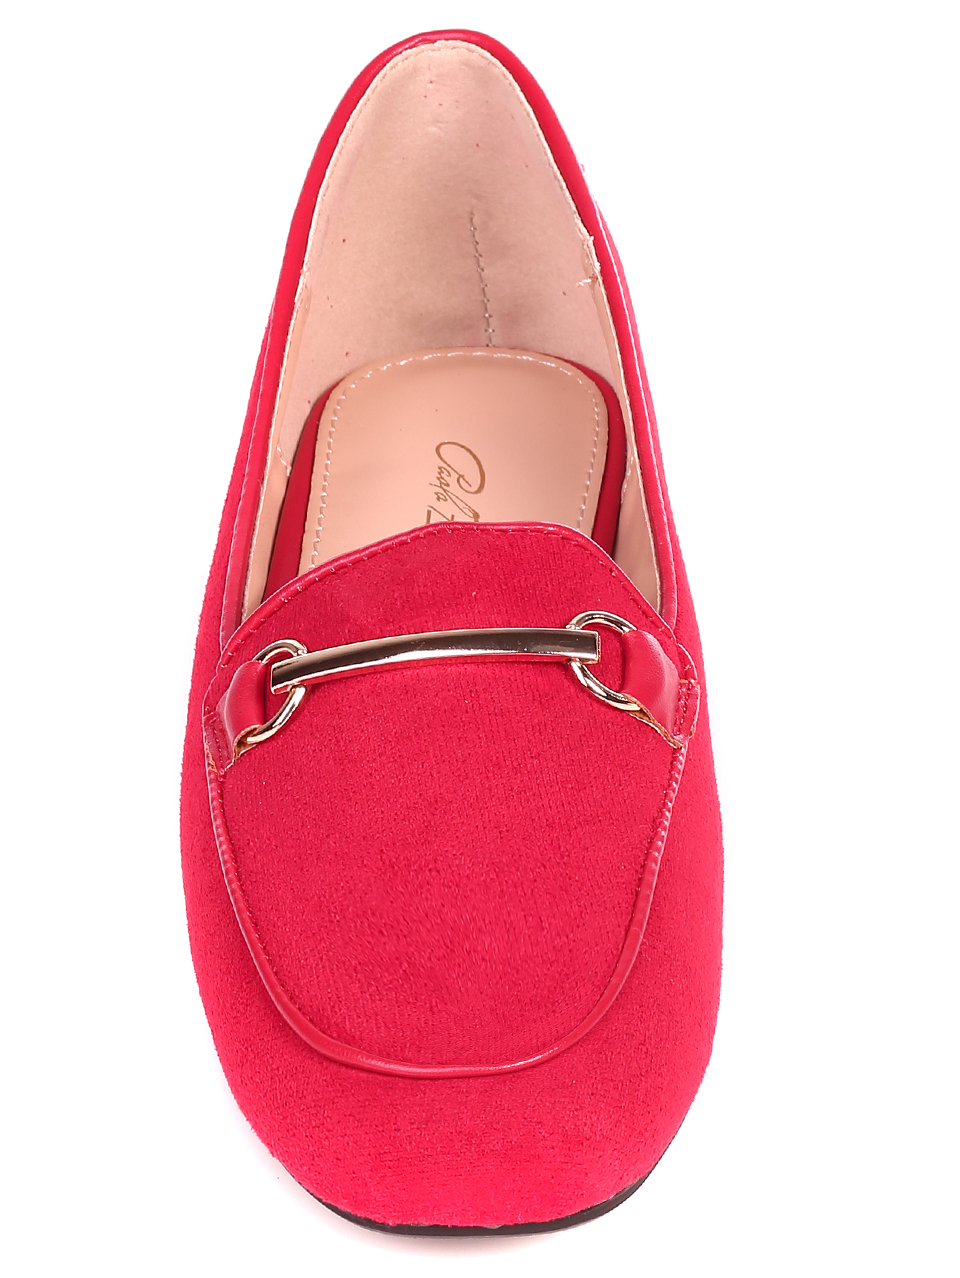 Ежедневни дамски обувки в червено 3M-21822 red